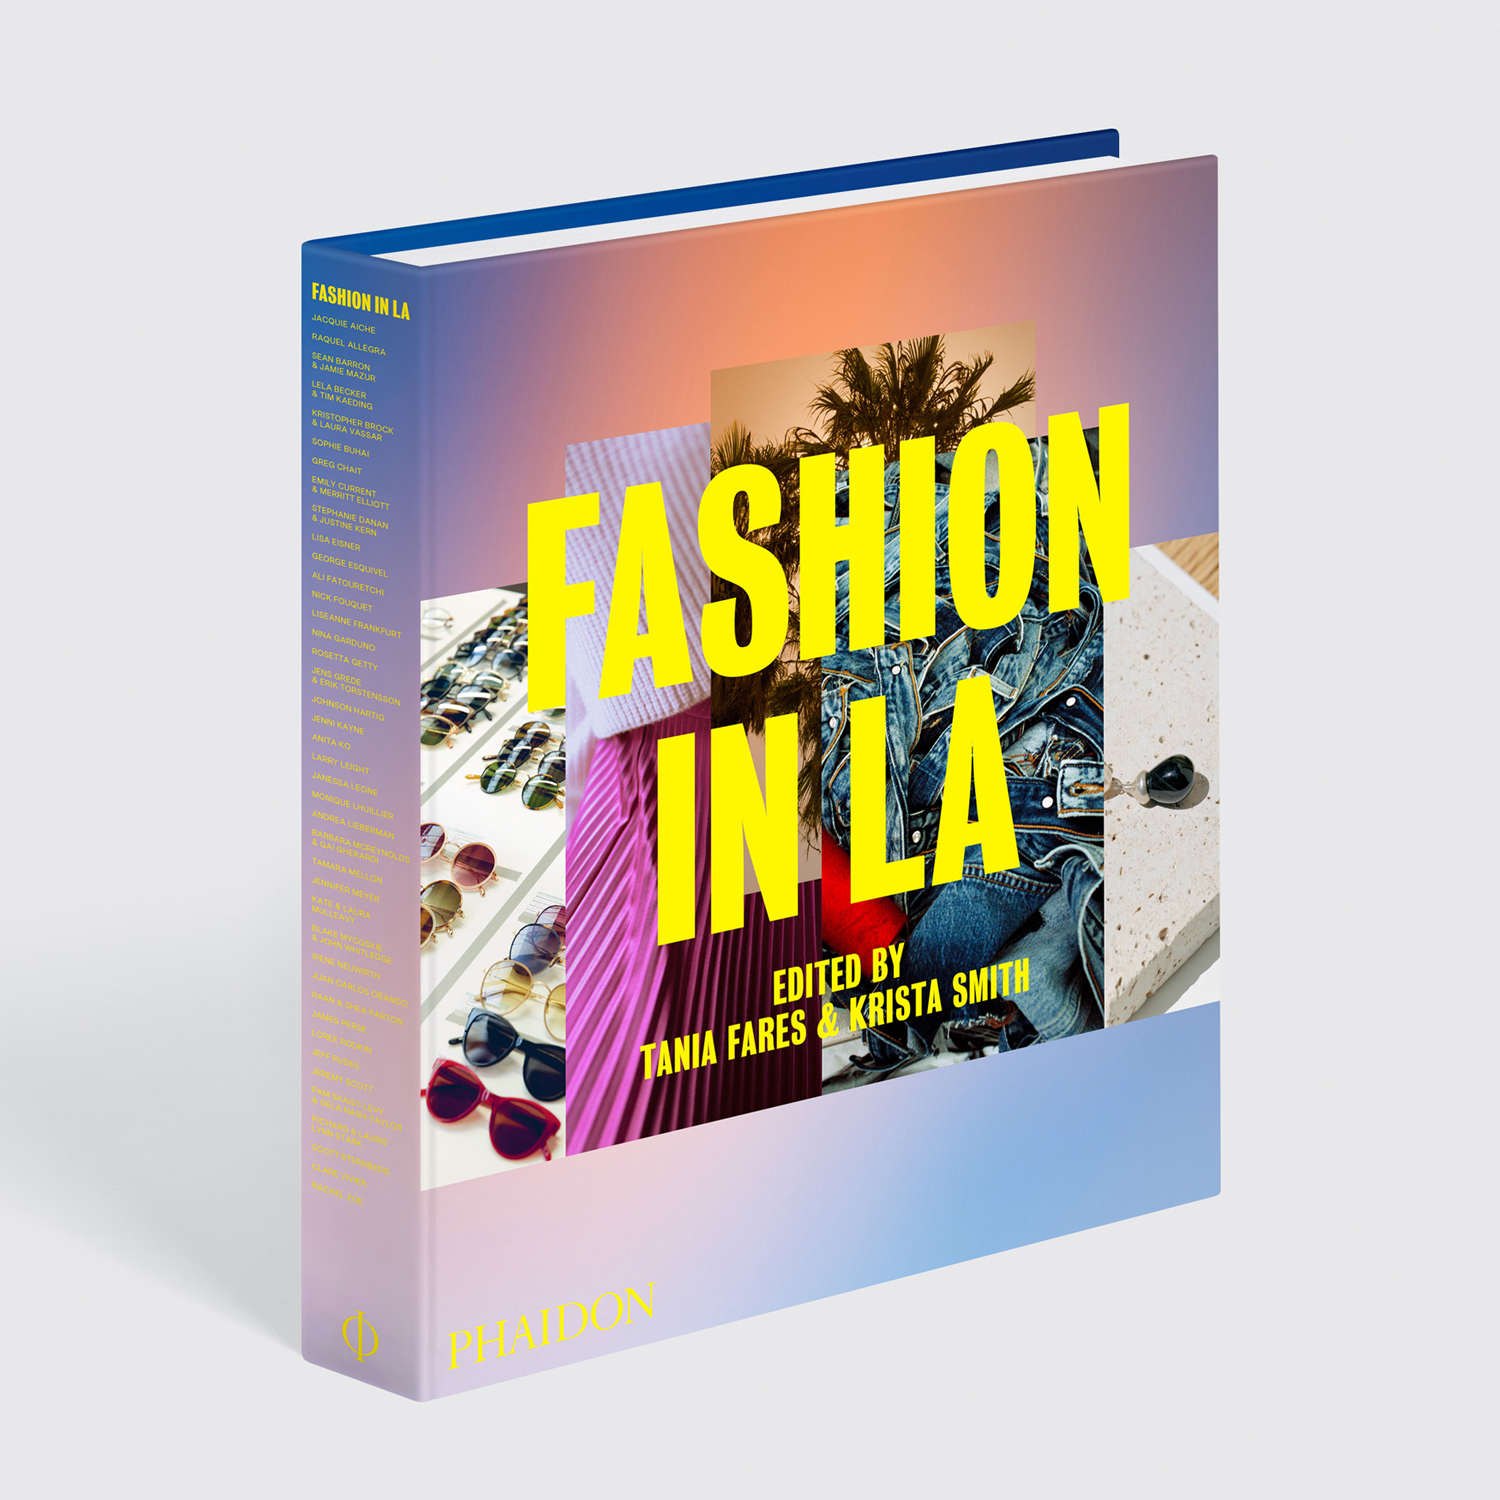 Fashion in LA